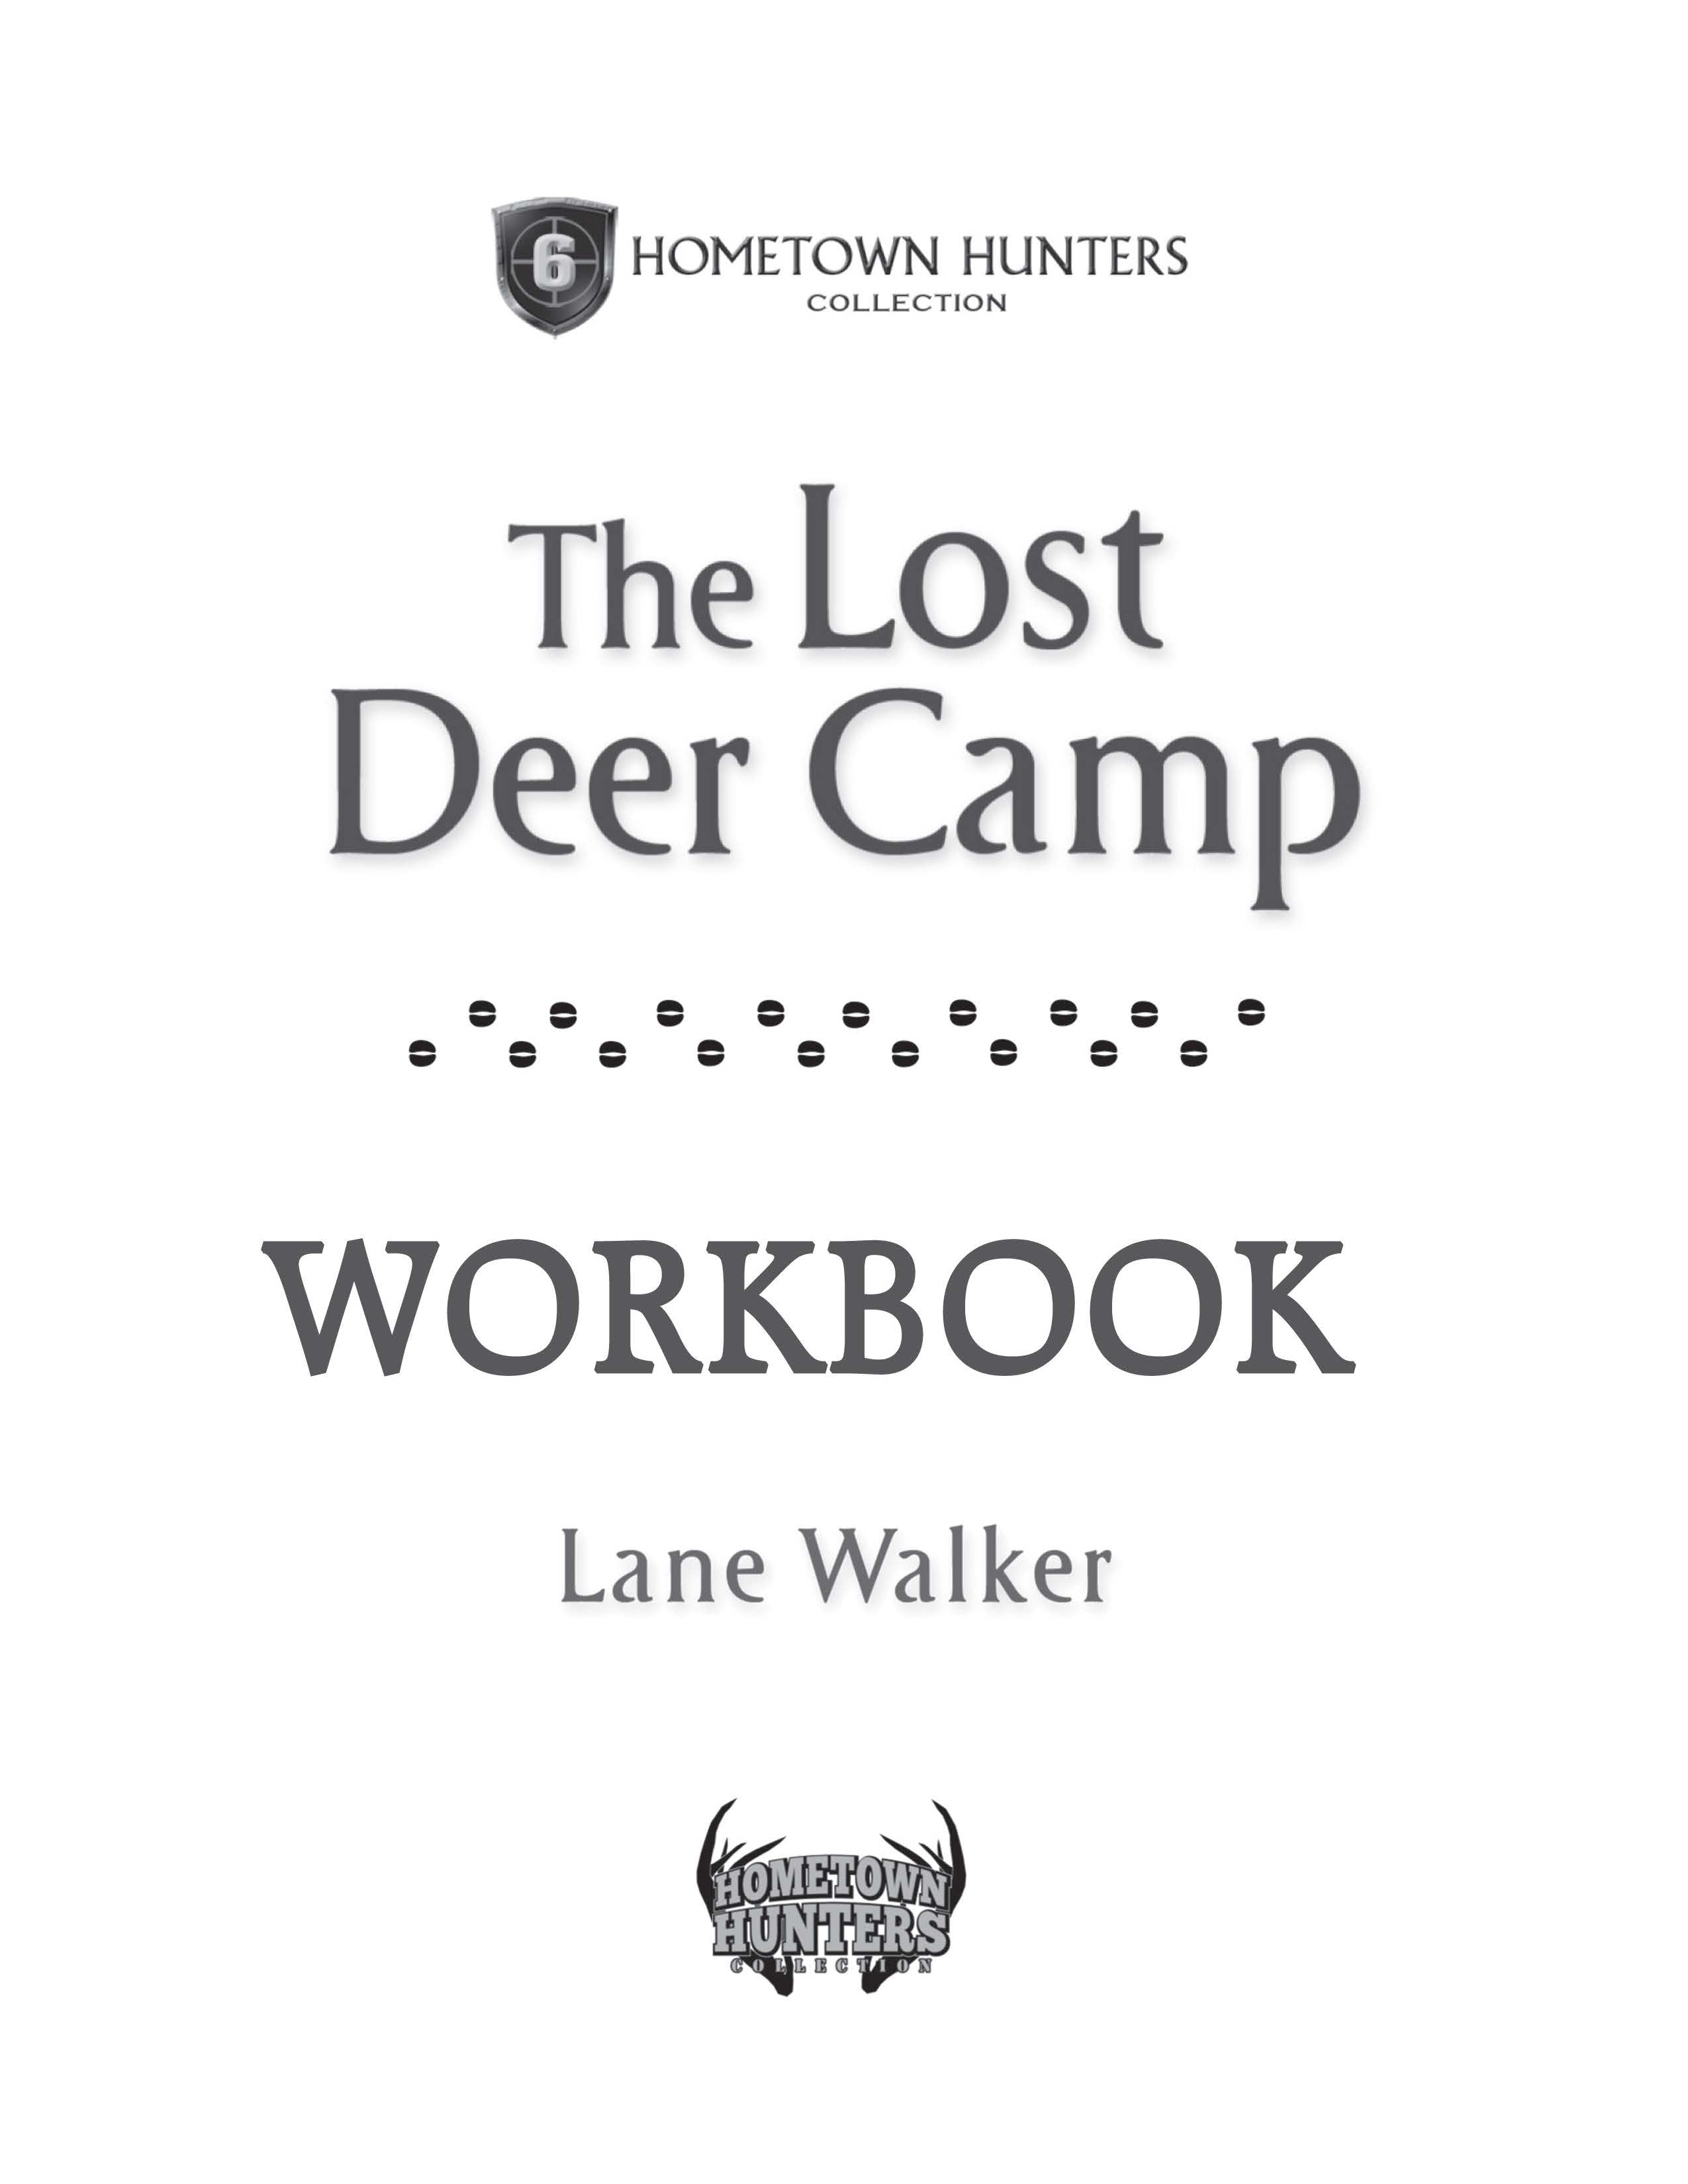 The Lost Deer Camp (Hometown Hunters #6) by Lane Walker